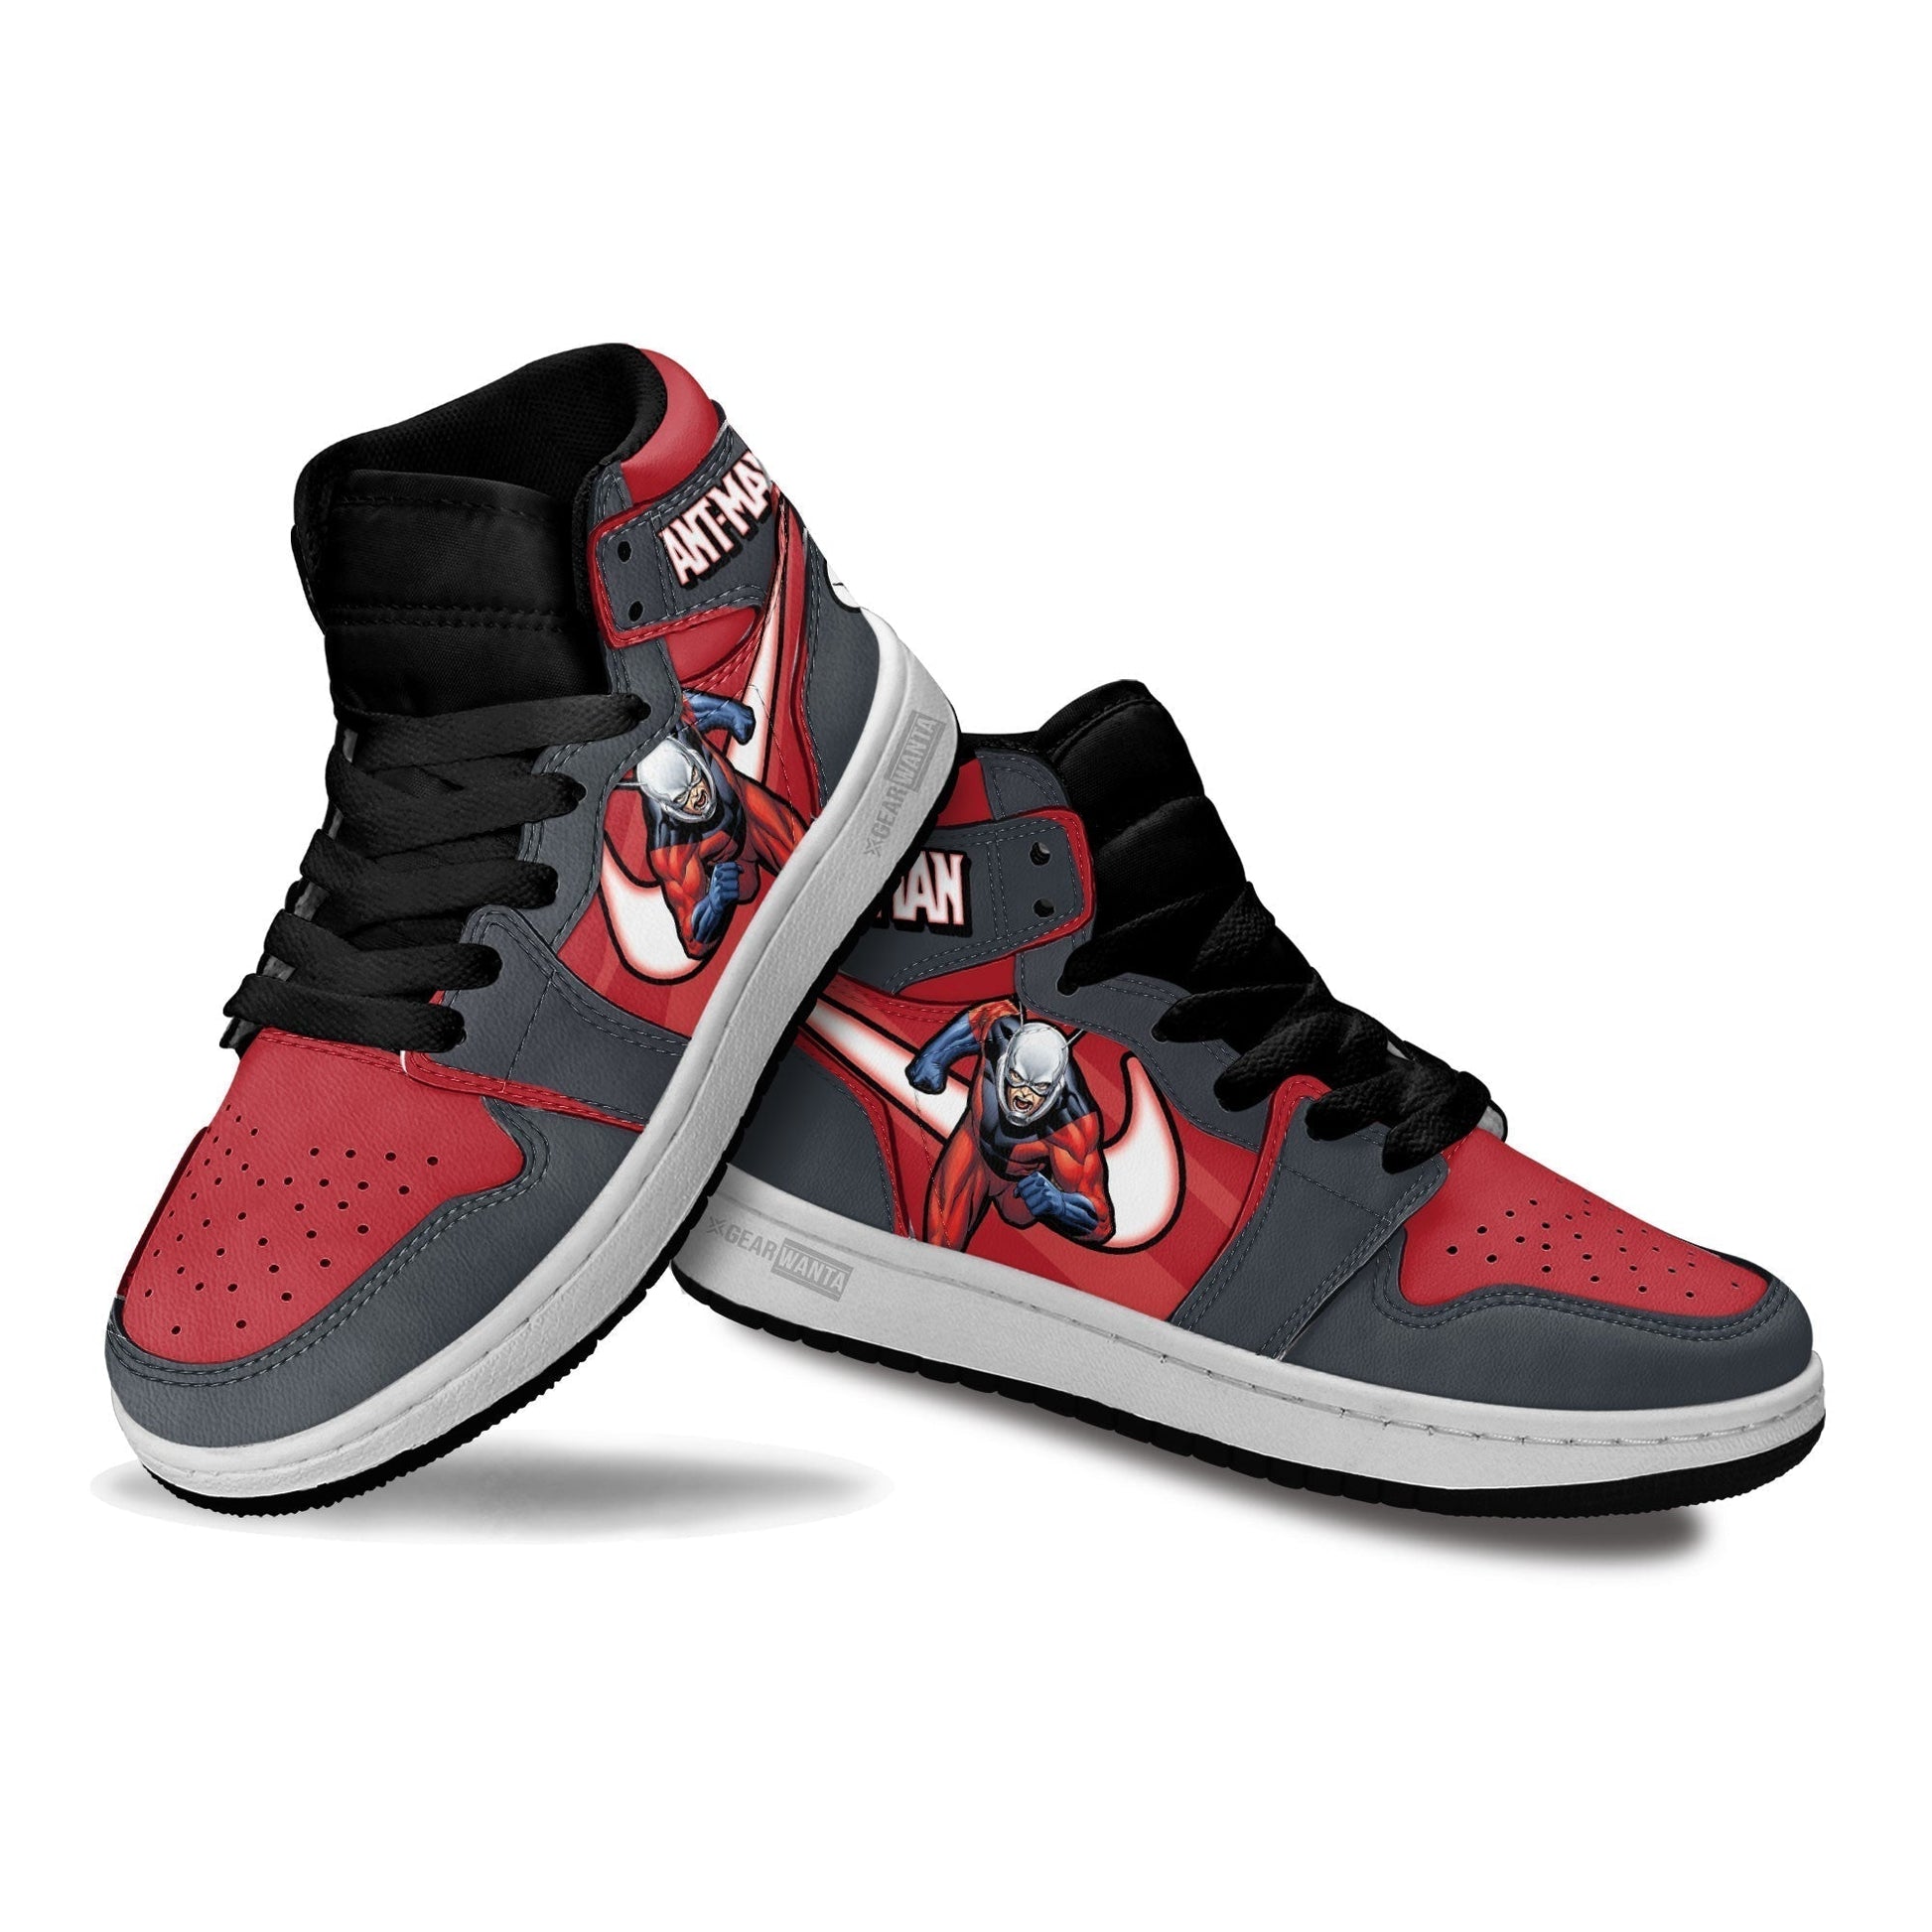 Antman Kids J1 Sneakers Custom Shoes For Kids-Gear Wanta